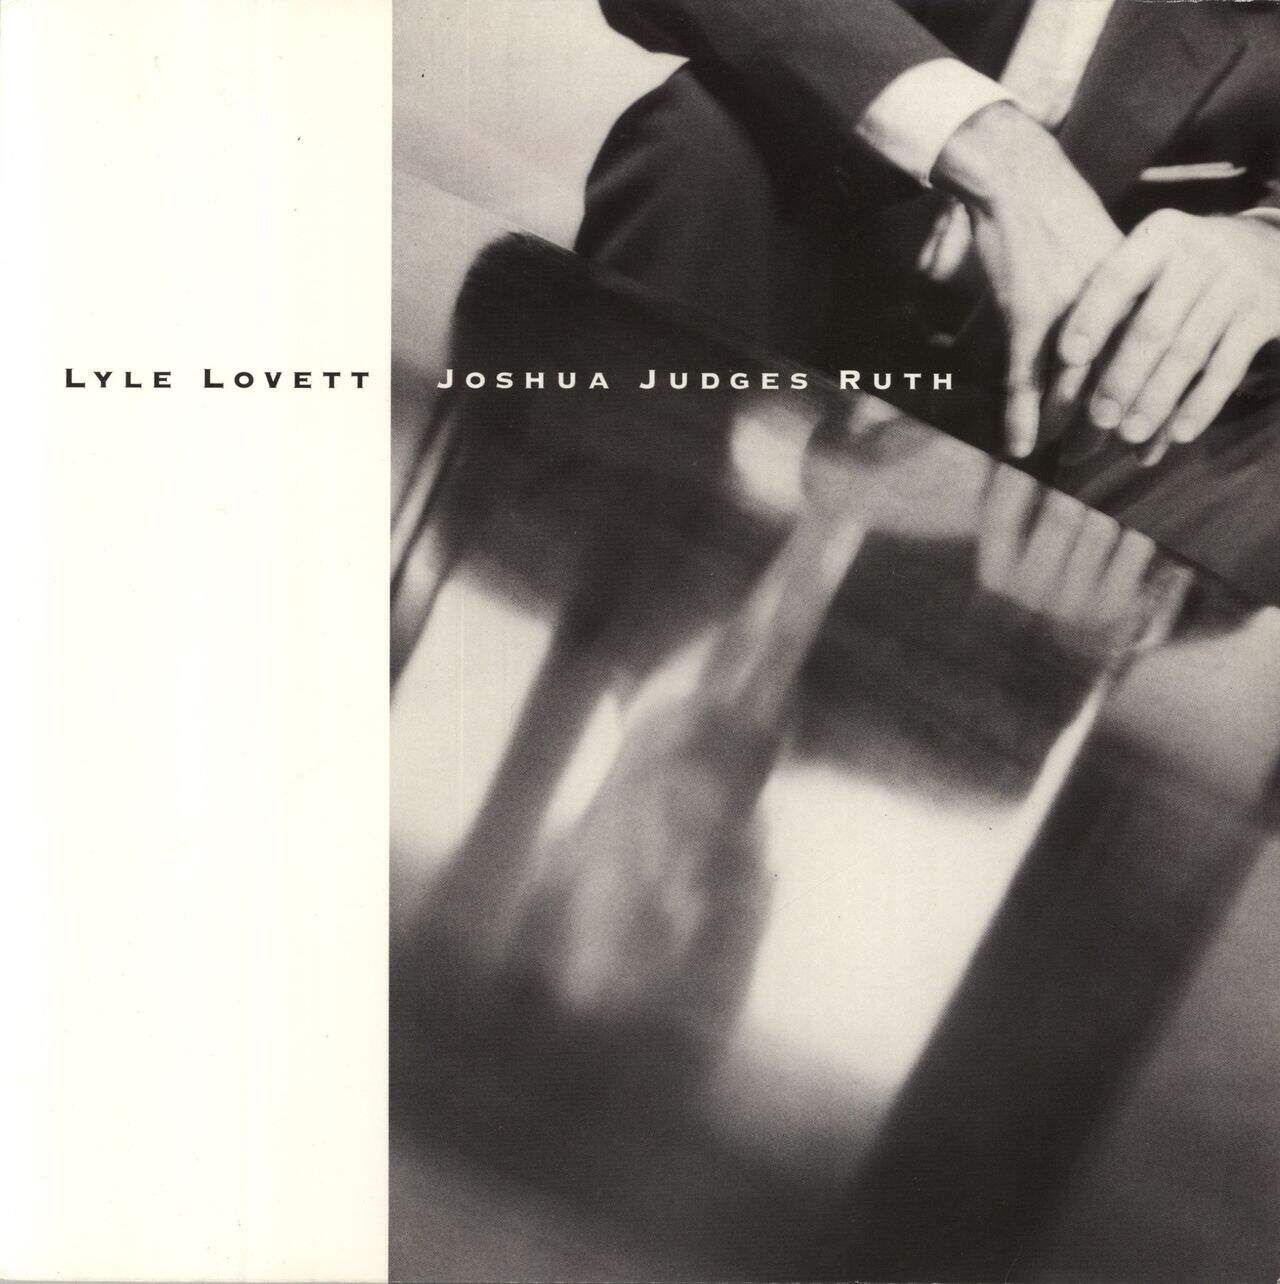 Lyle Lovett Joshua Judges Ruth UK Vinyl LP